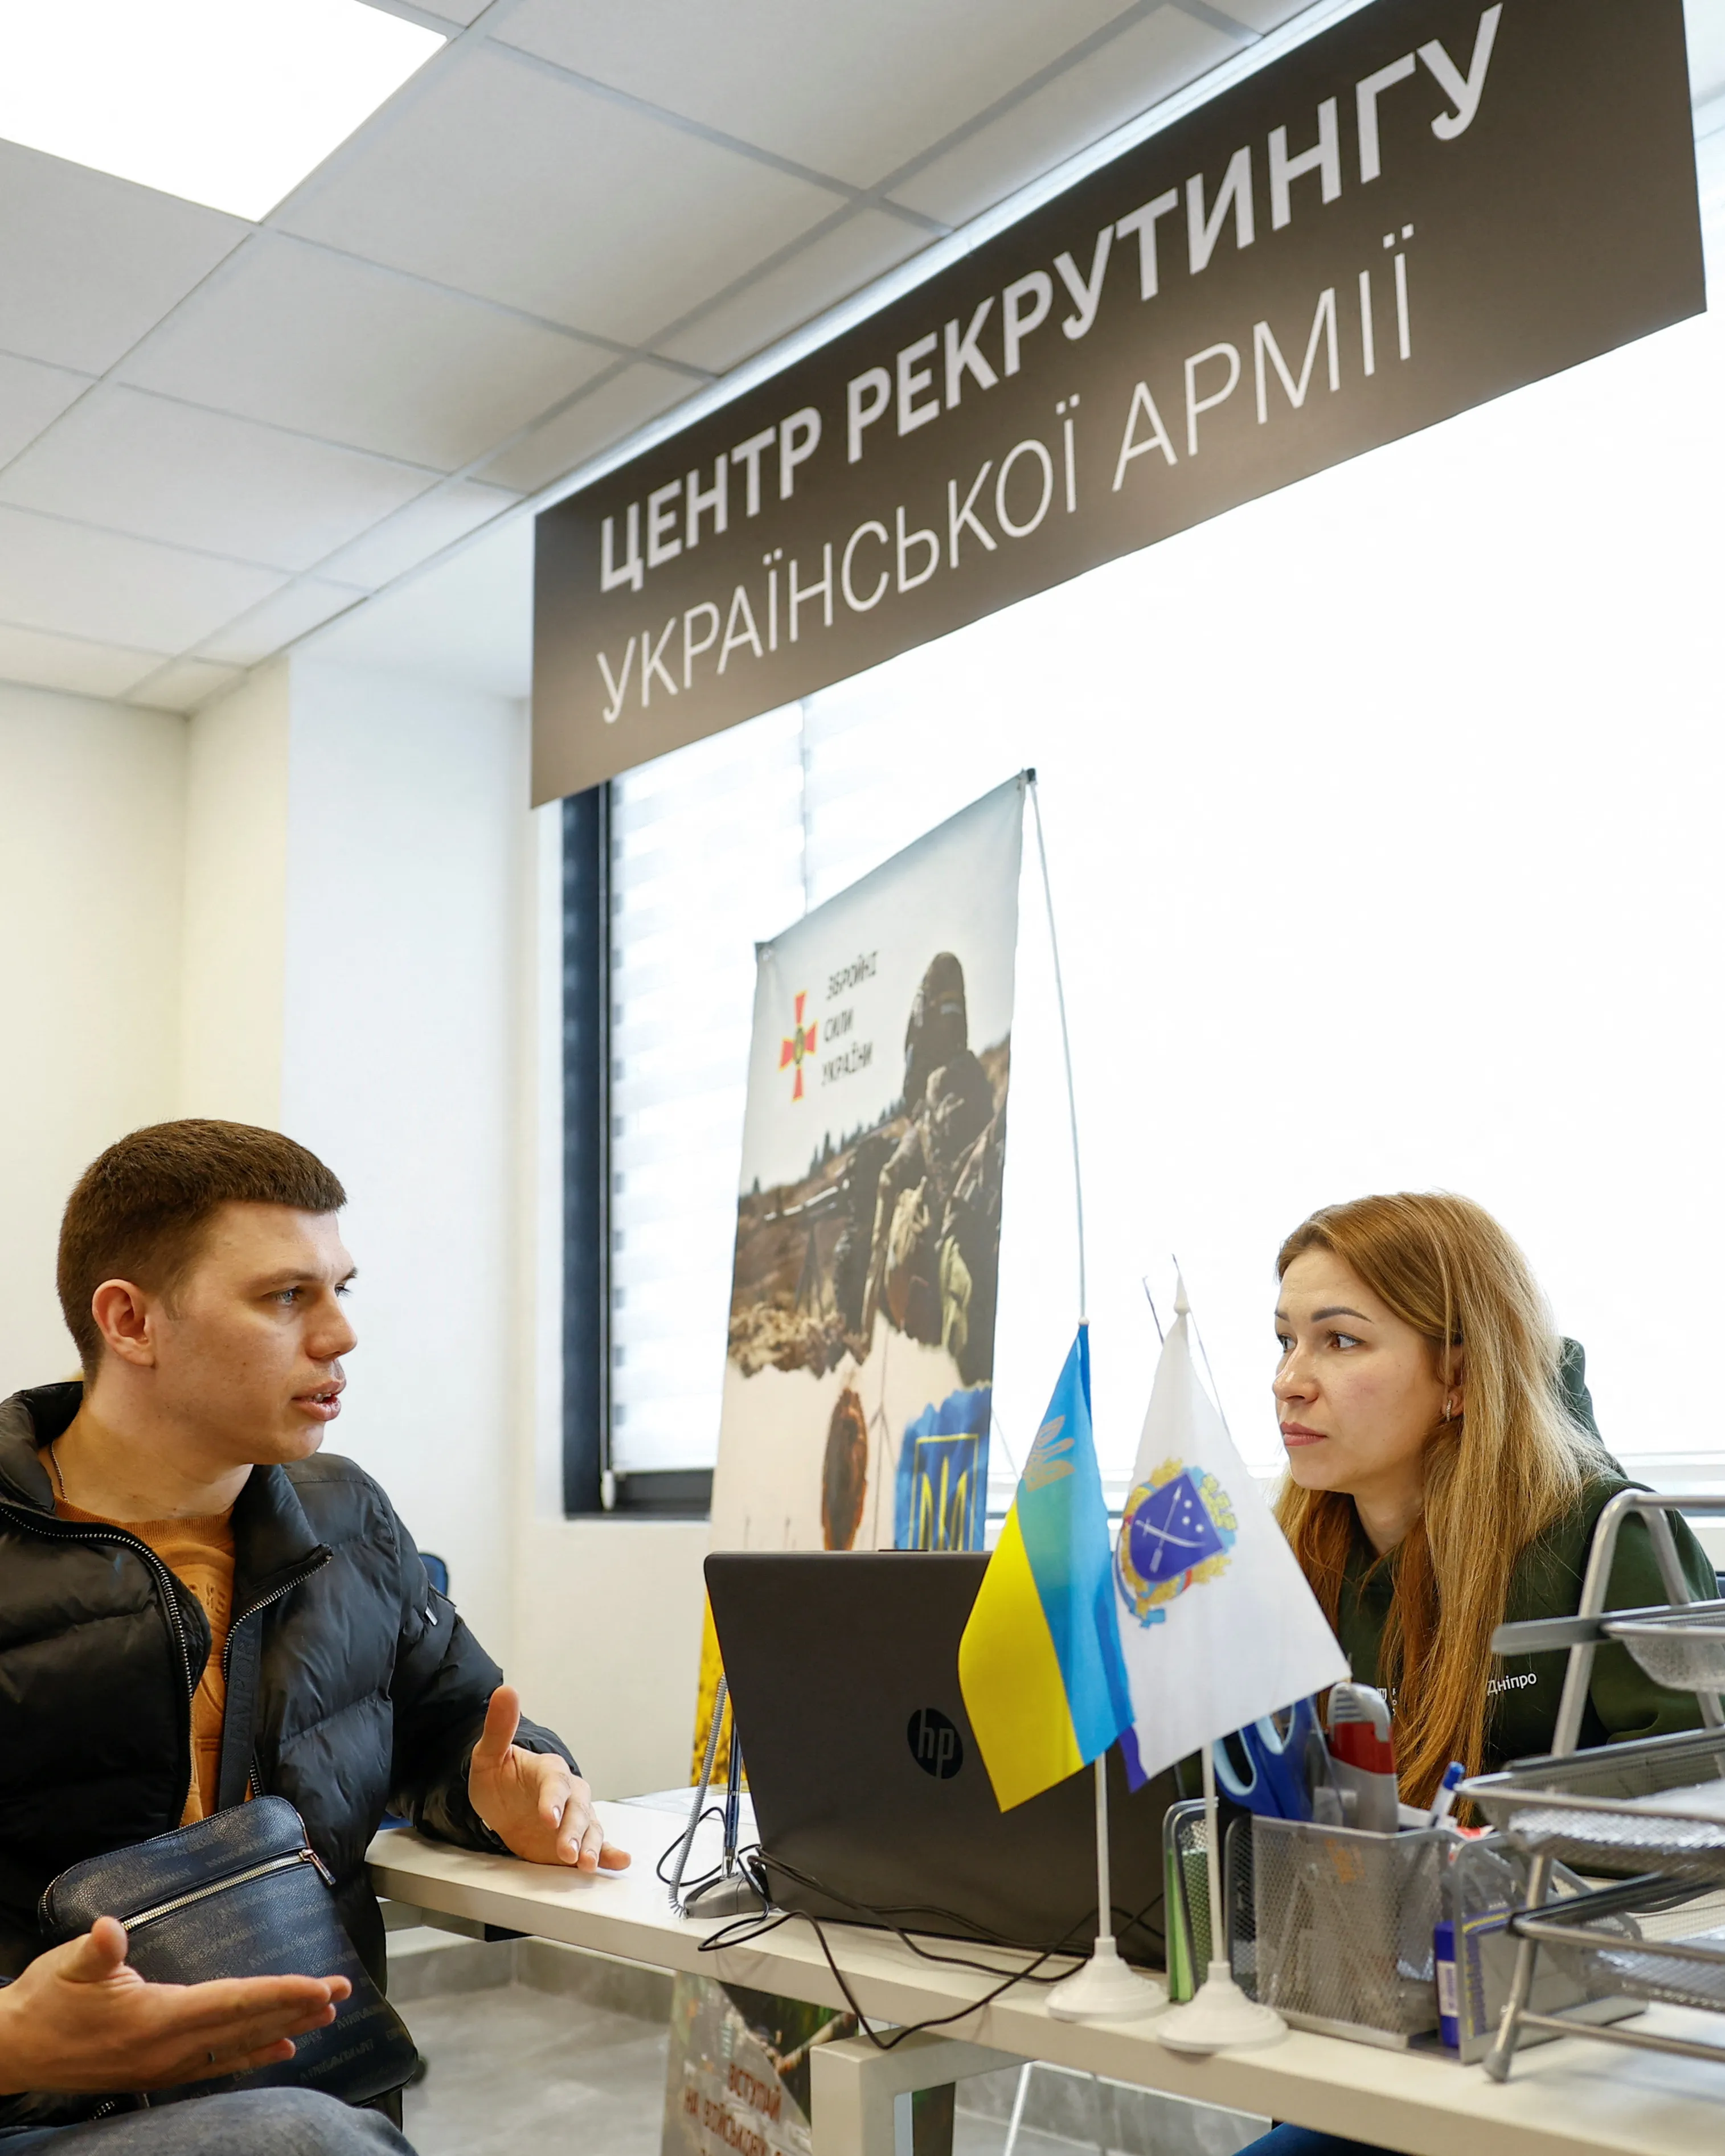 Ukrajina potřebuje muže. Těm v zahraničí omezila konzulární služby, aby museli domů